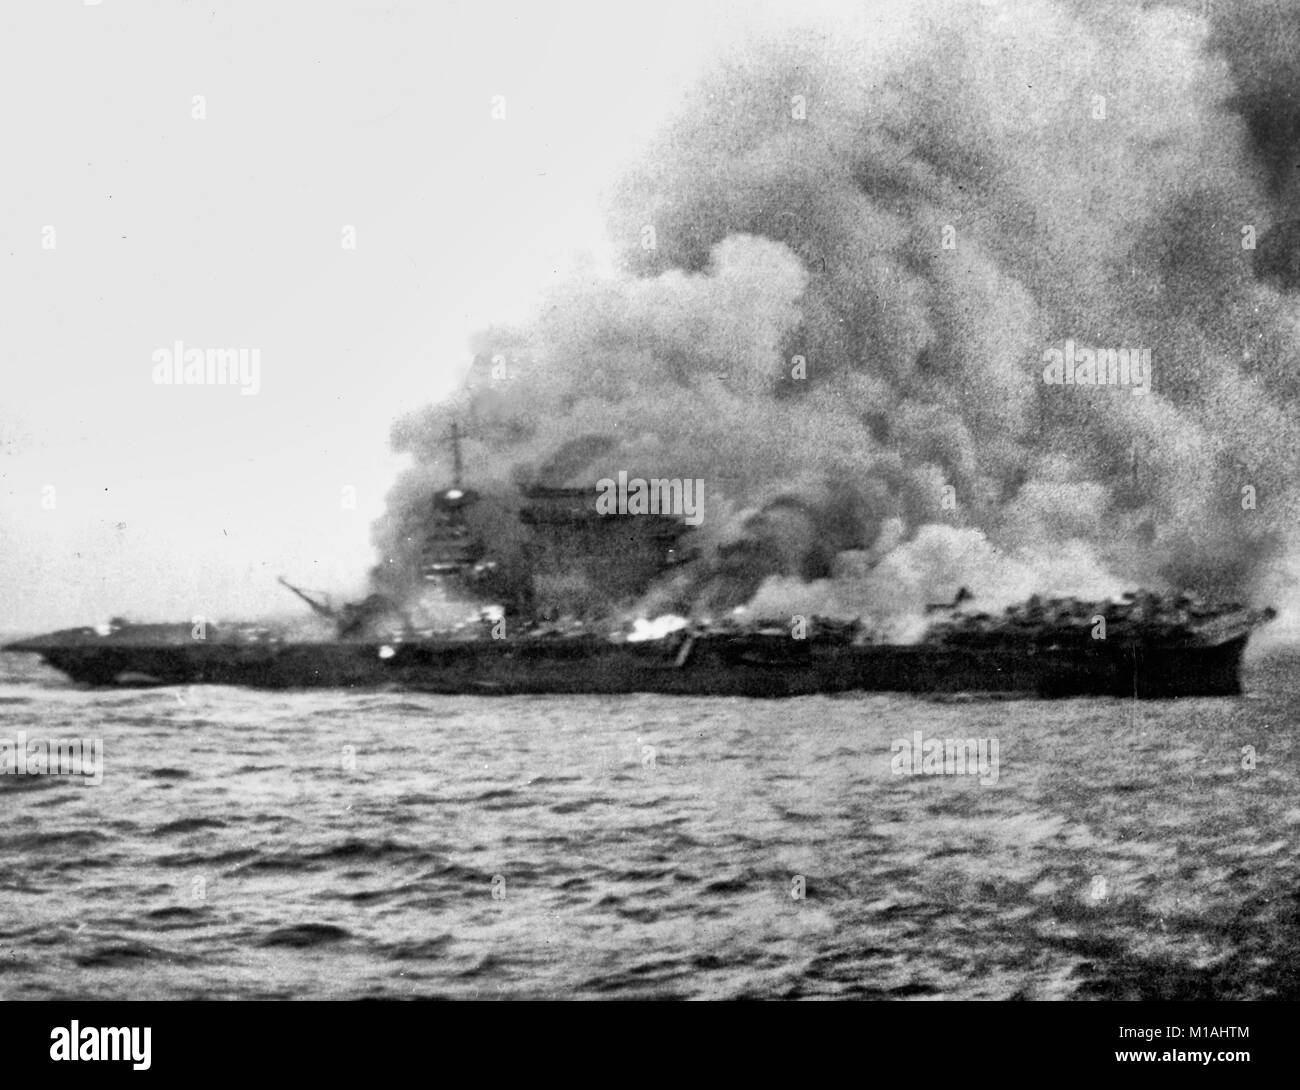 Die US-Marine Flugzeugträger USS Lexington (CV-2), Brennen und Untergang nach ihrer Besatzung verlassenes Schiff während der Schlacht in der Coral Sea, 8. Mai 1942. Hinweis Flugzeuge geparkt aft, wo Brände noch nicht erreicht haben. Stockfoto